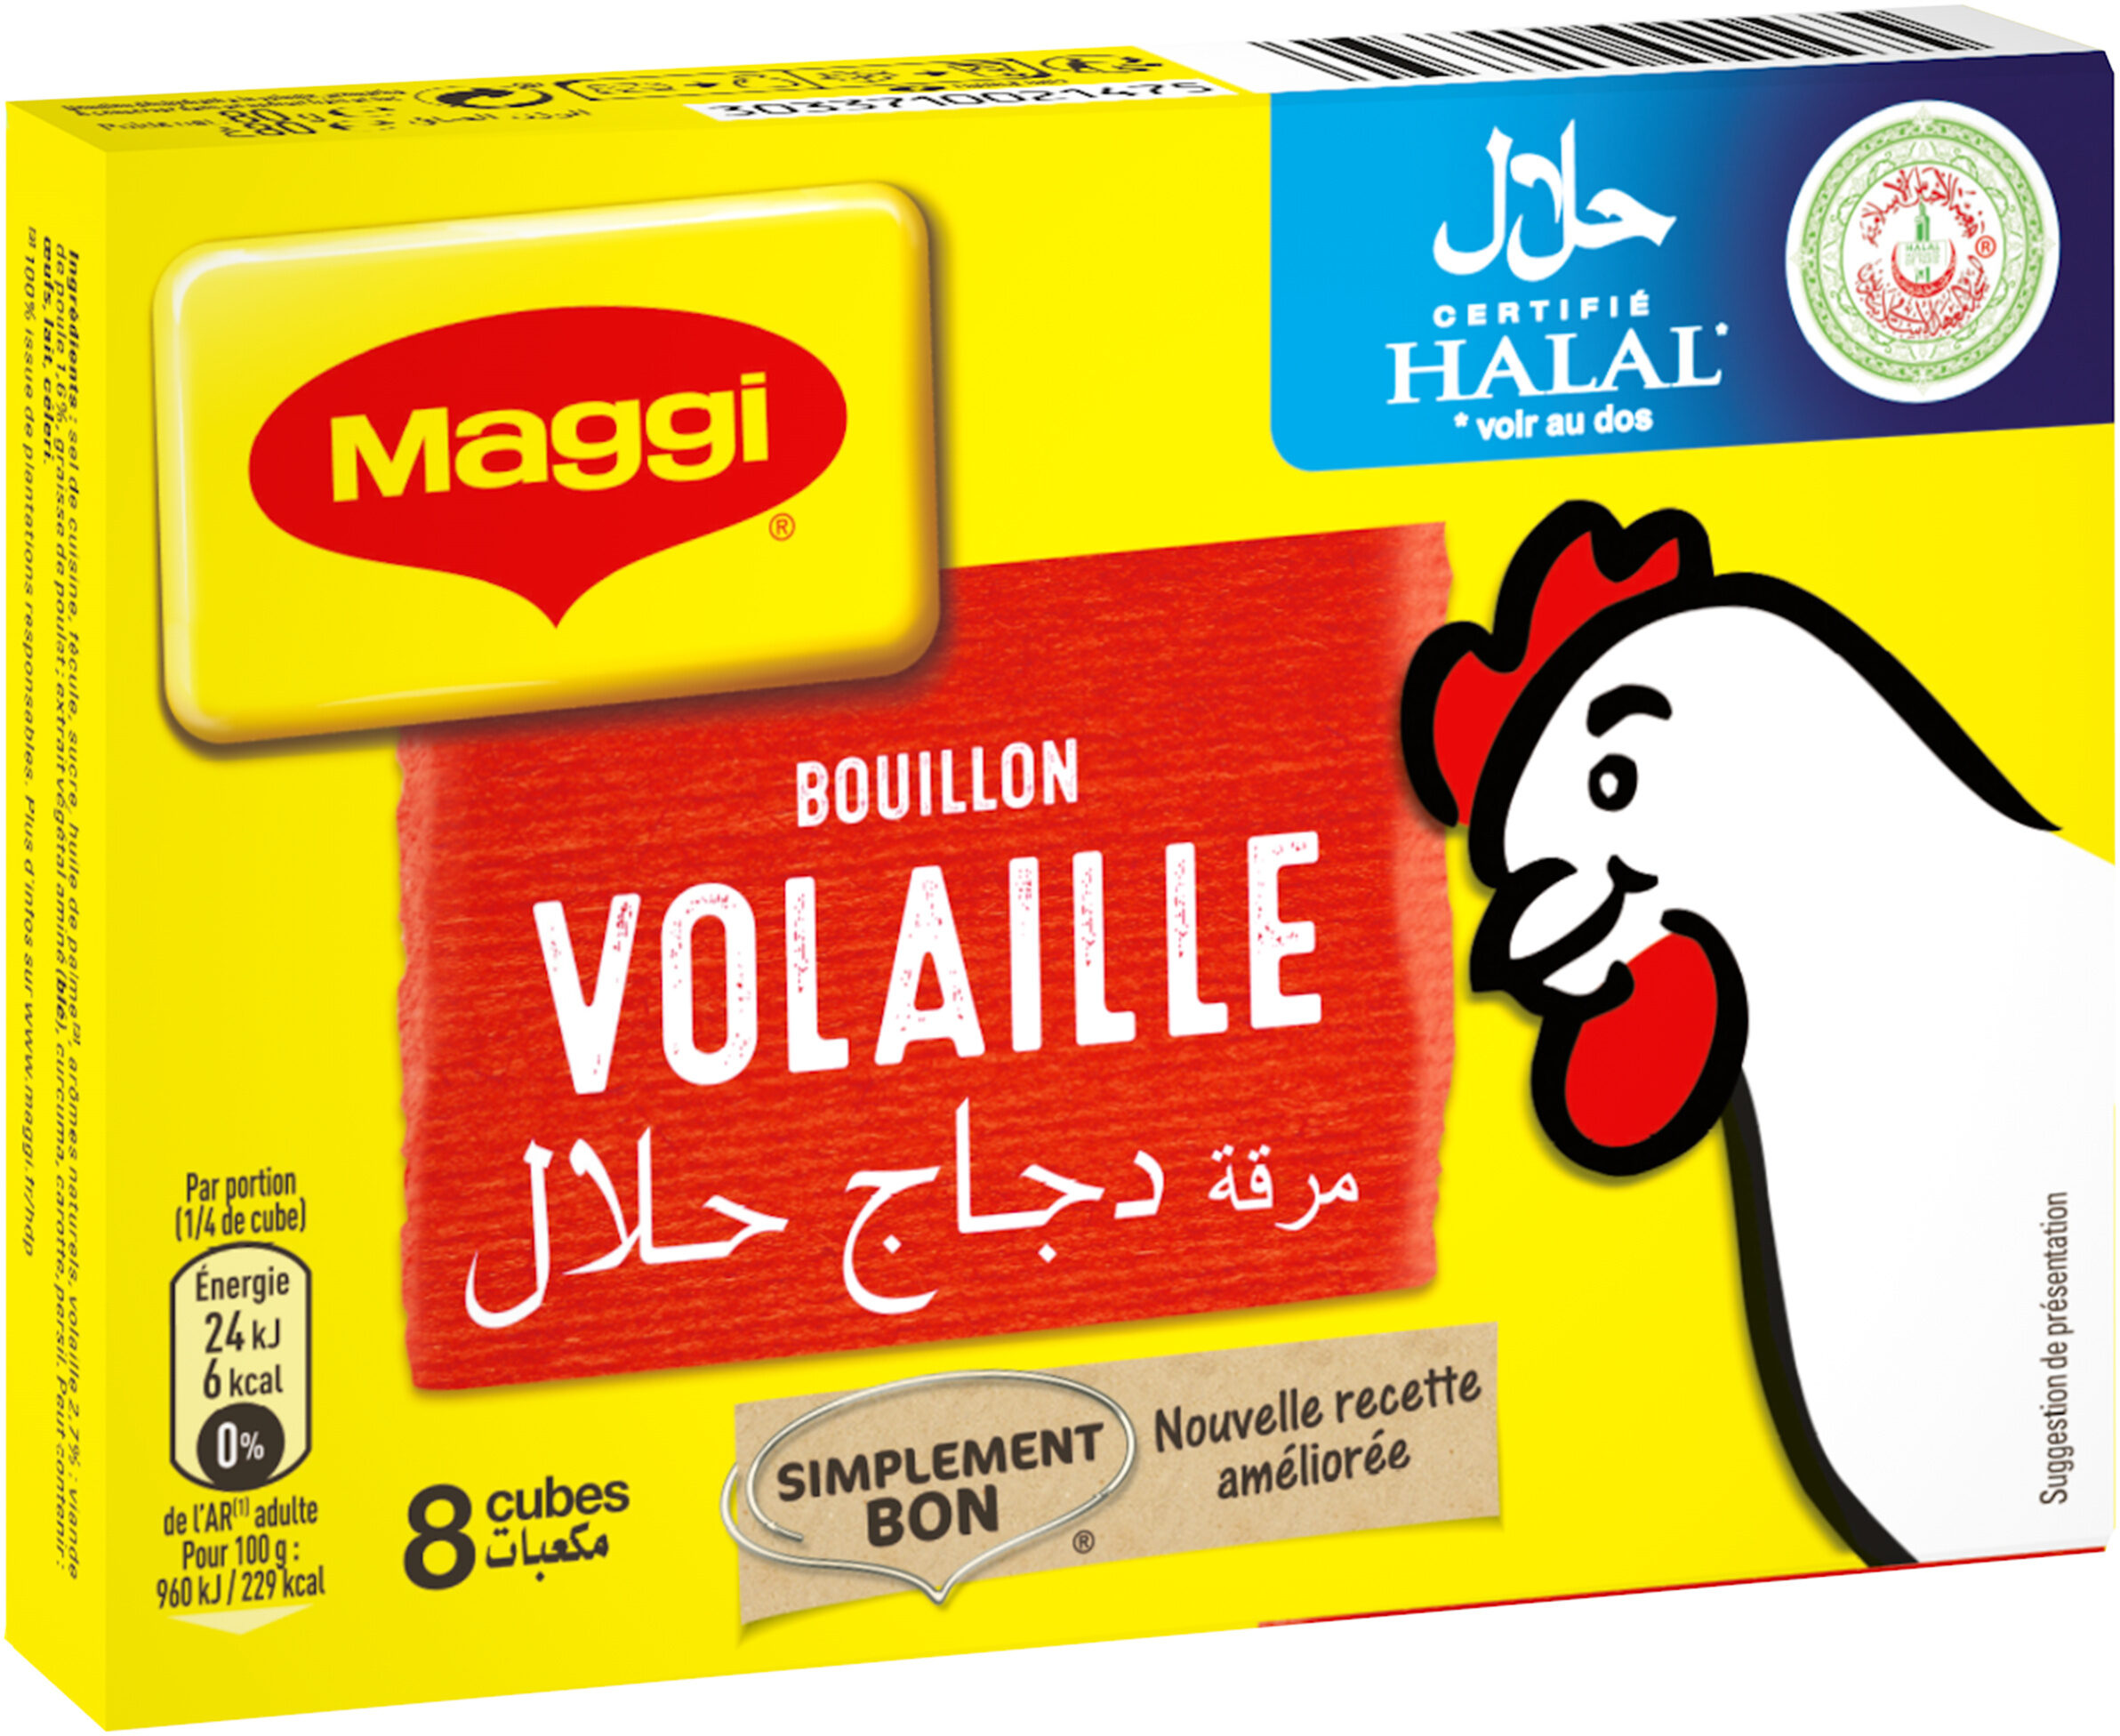 MAGGI Bouillon de Volaille Halal 8 tablettes, 80g - Produkt - fr